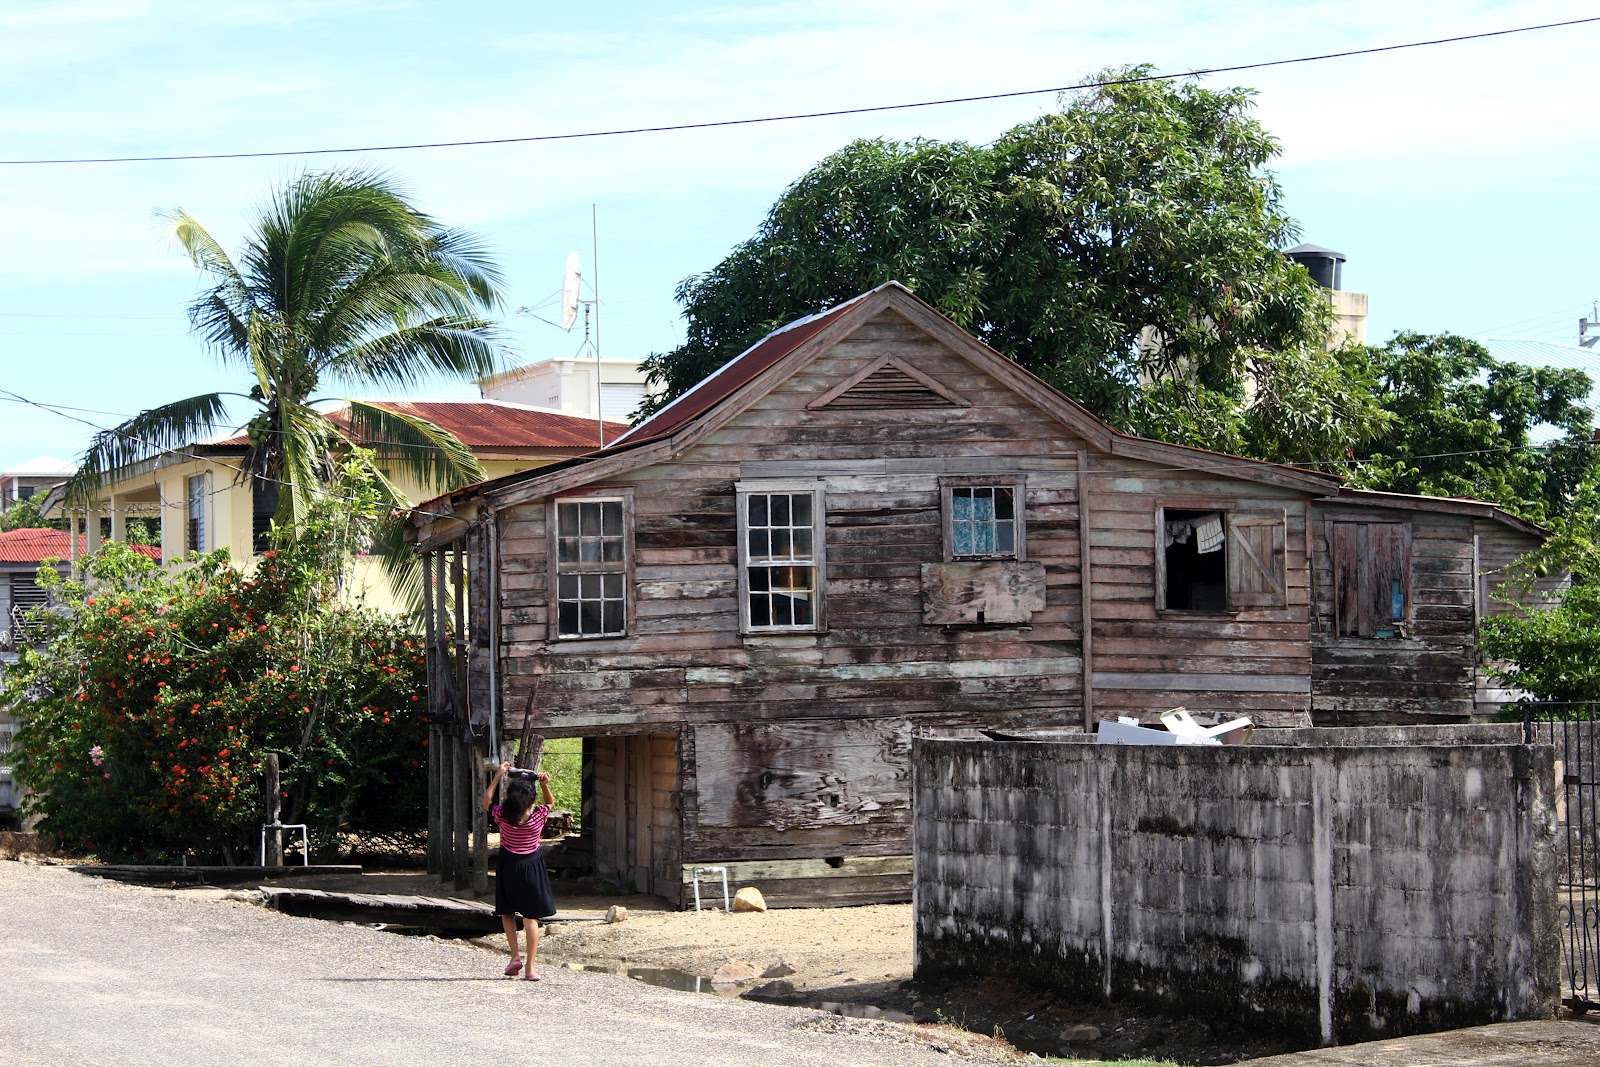 Visitar DANDRIGA, uma típica povoação das Caraíbas ao ritmo  "Go slow" | Belize